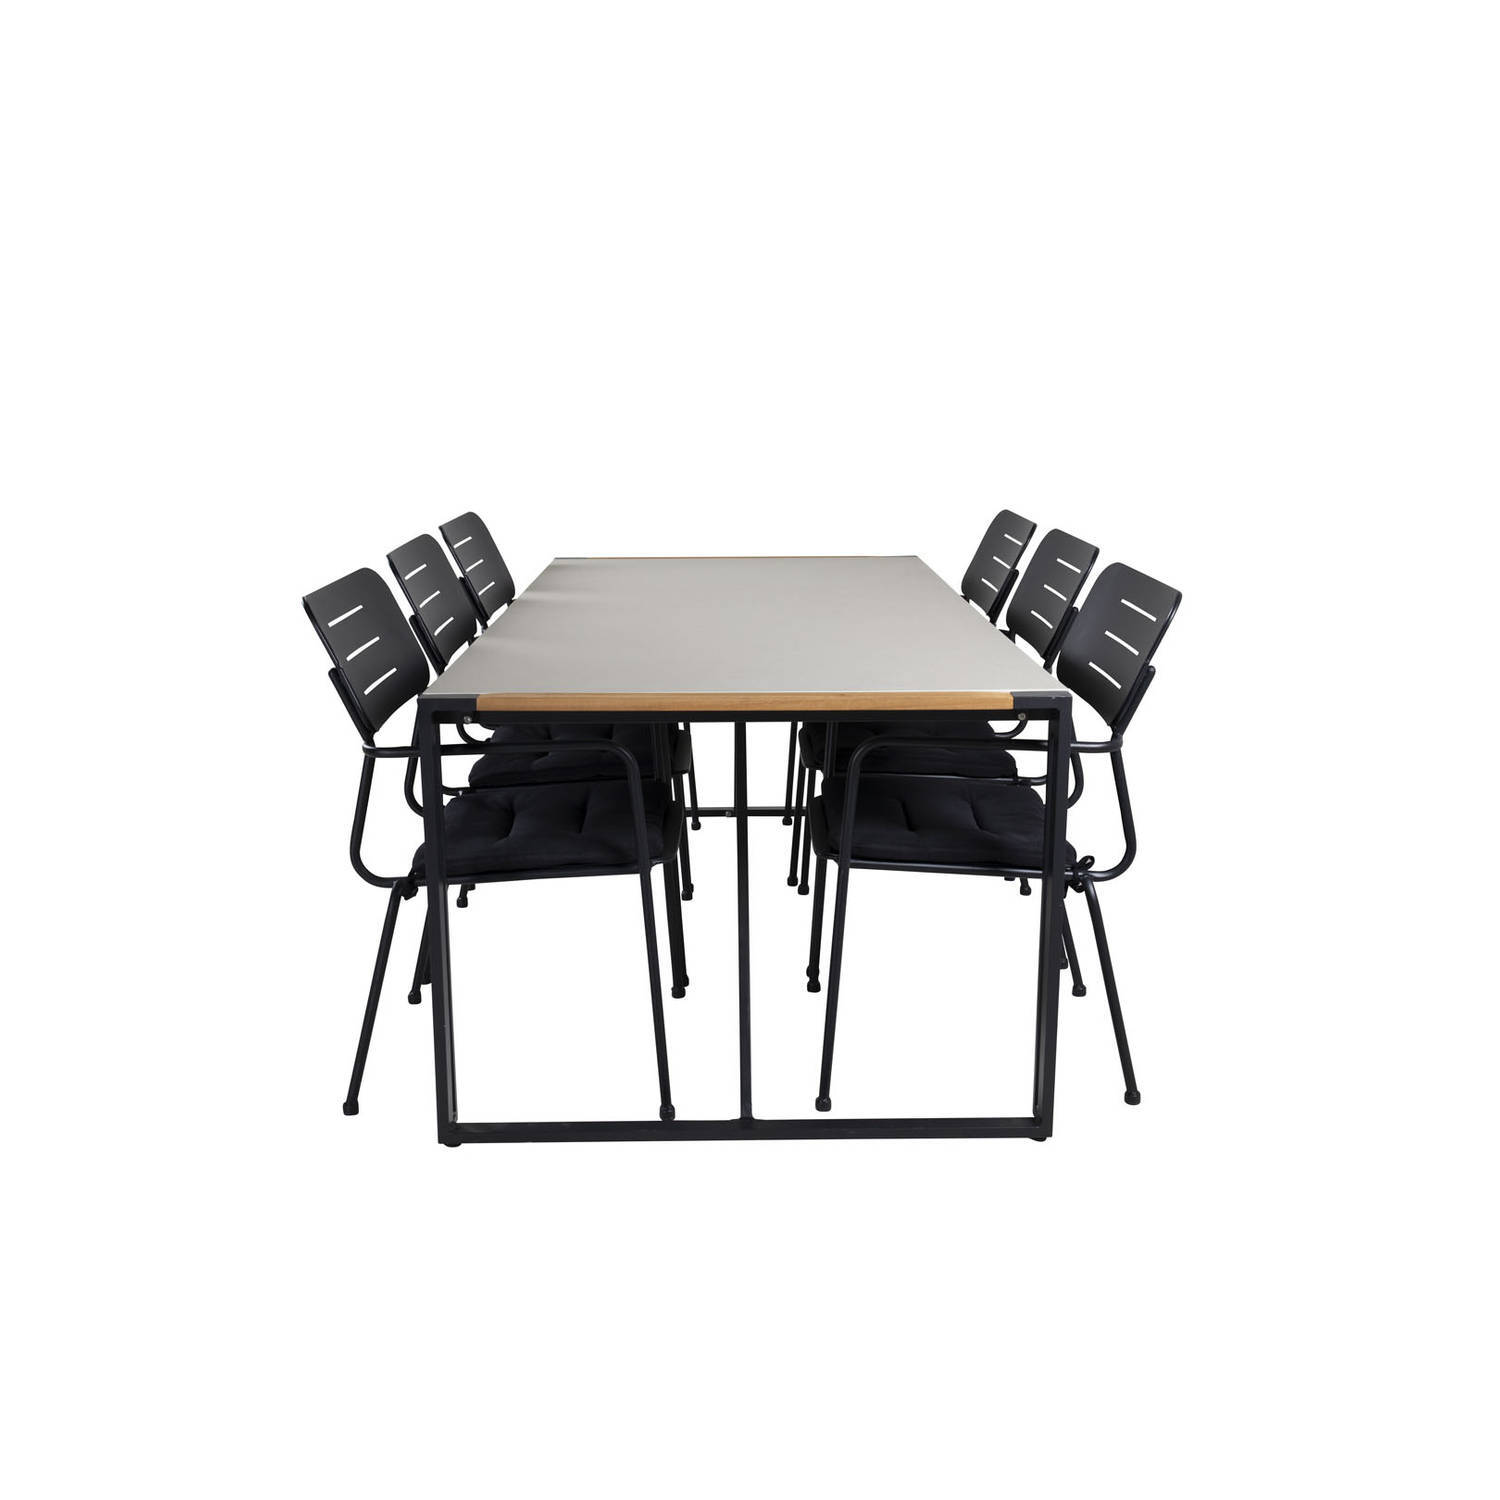 Hioshop Texas tuinmeubelset tafel 100x200cm en 6 stoel Nicke groen, zwart, grijs, naturel.